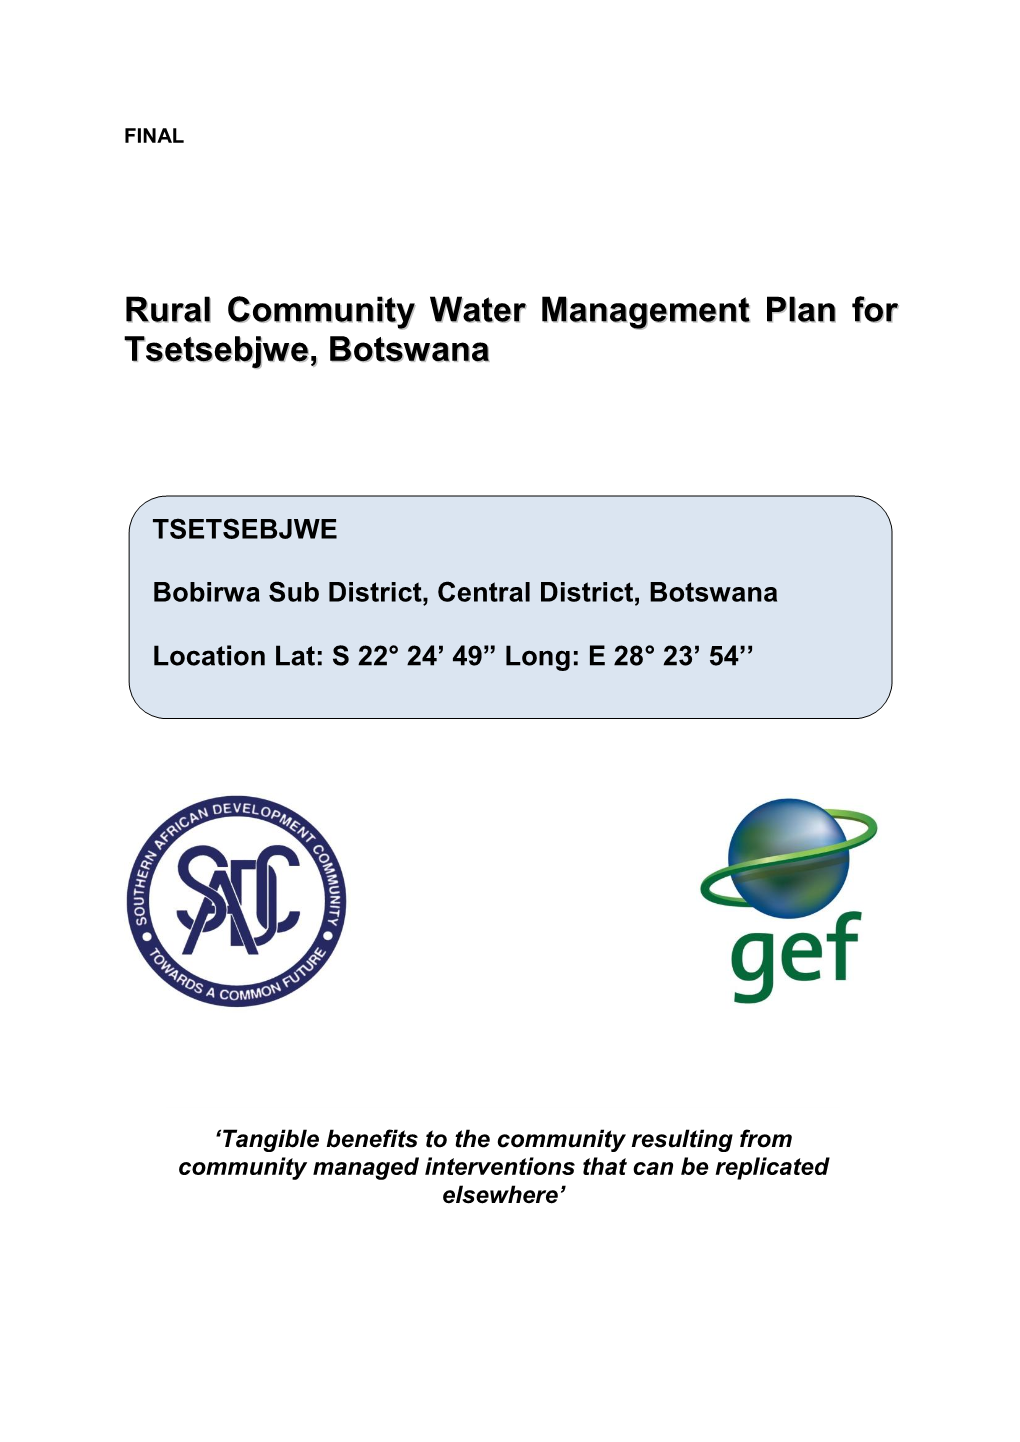 Rural Community Water Management Plan for Tsetsebjwe, Botswana